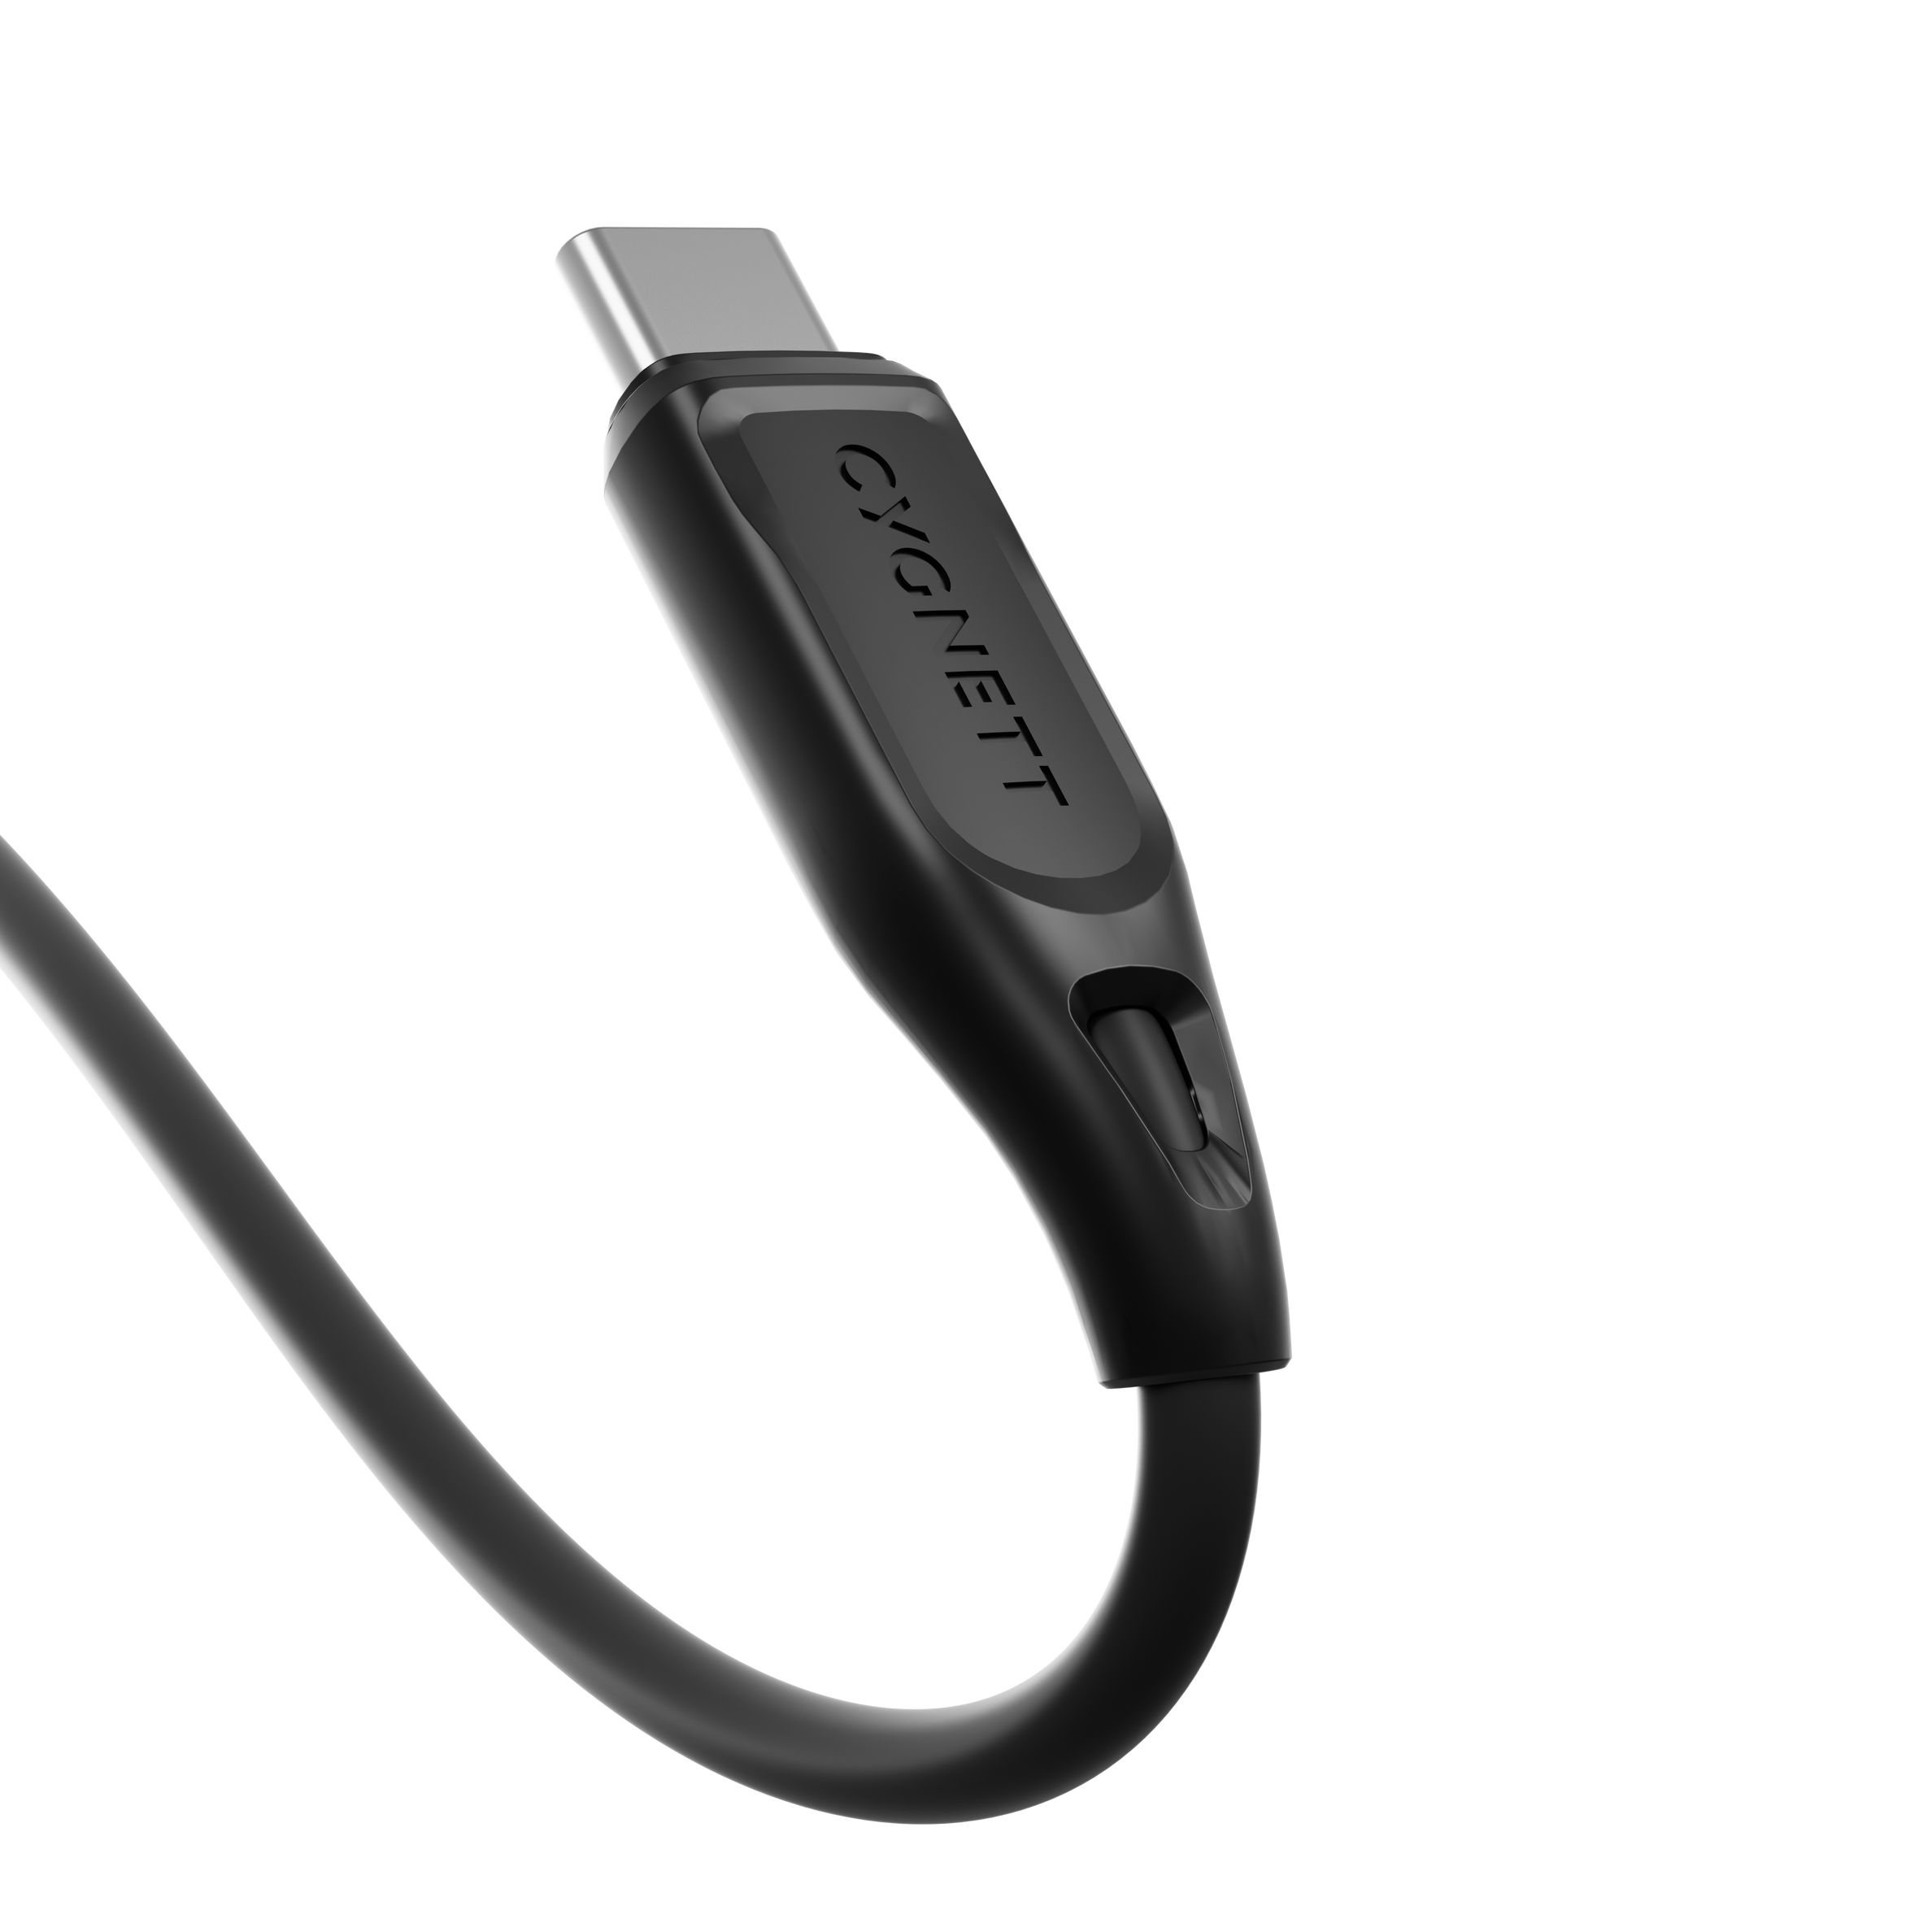 USB-C to USB-C (2.0) Cable 1m - Black - Cygnett (AU)